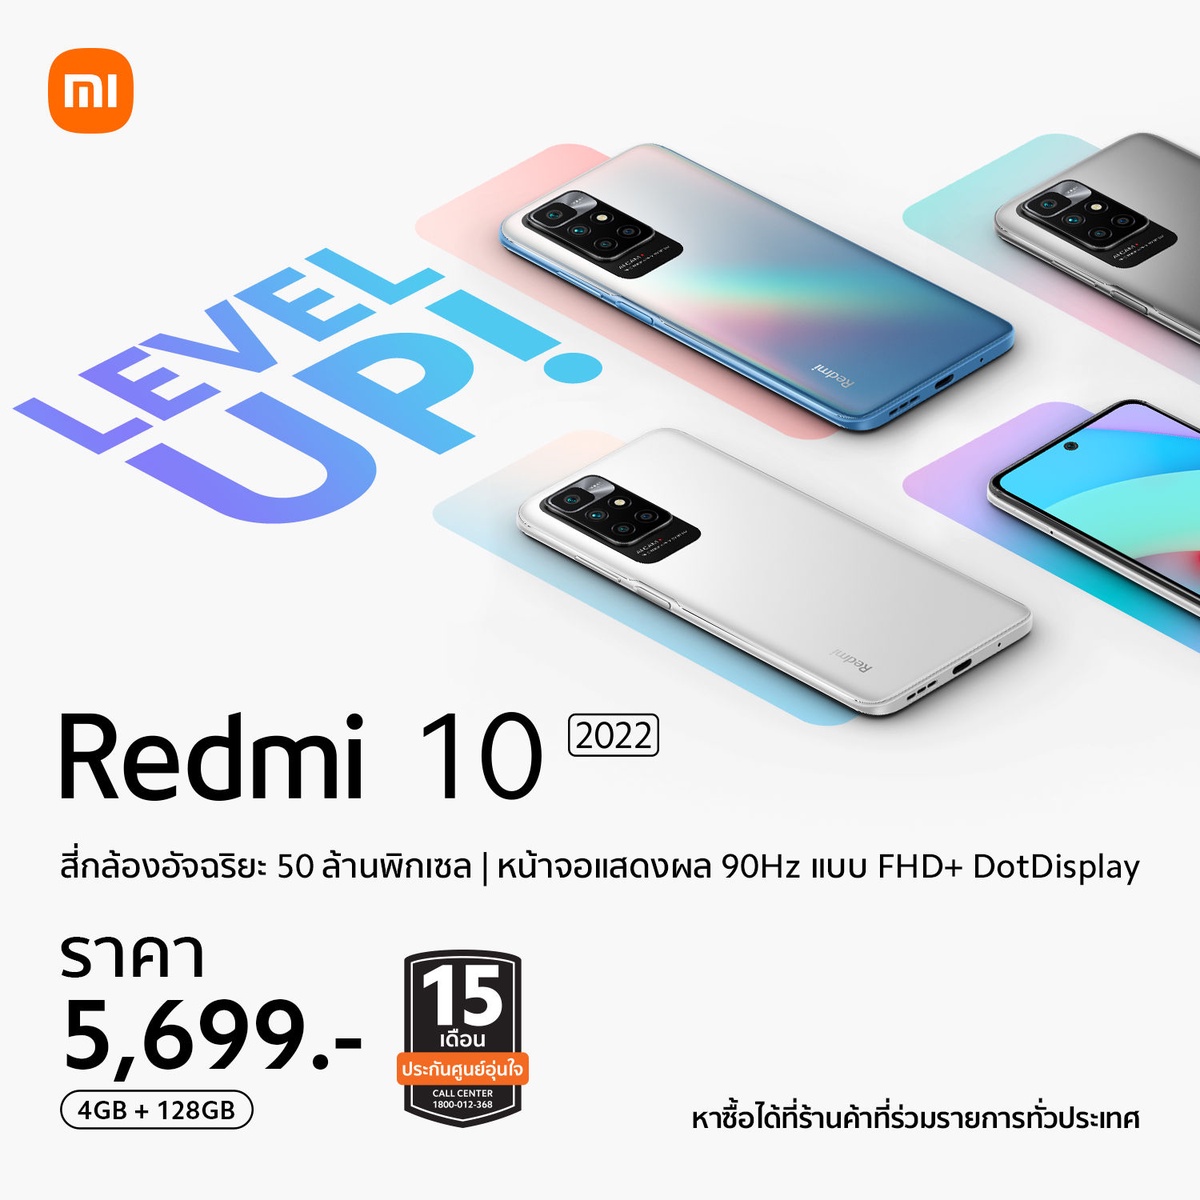 เสียวหมี่ประกาศวางจำหน่าย Redmi 10 2022 และ Redmi 10A สมาร์ทโฟนระดับเริ่มต้น ในราคาเพียง 5,699 บาท และ 3,999